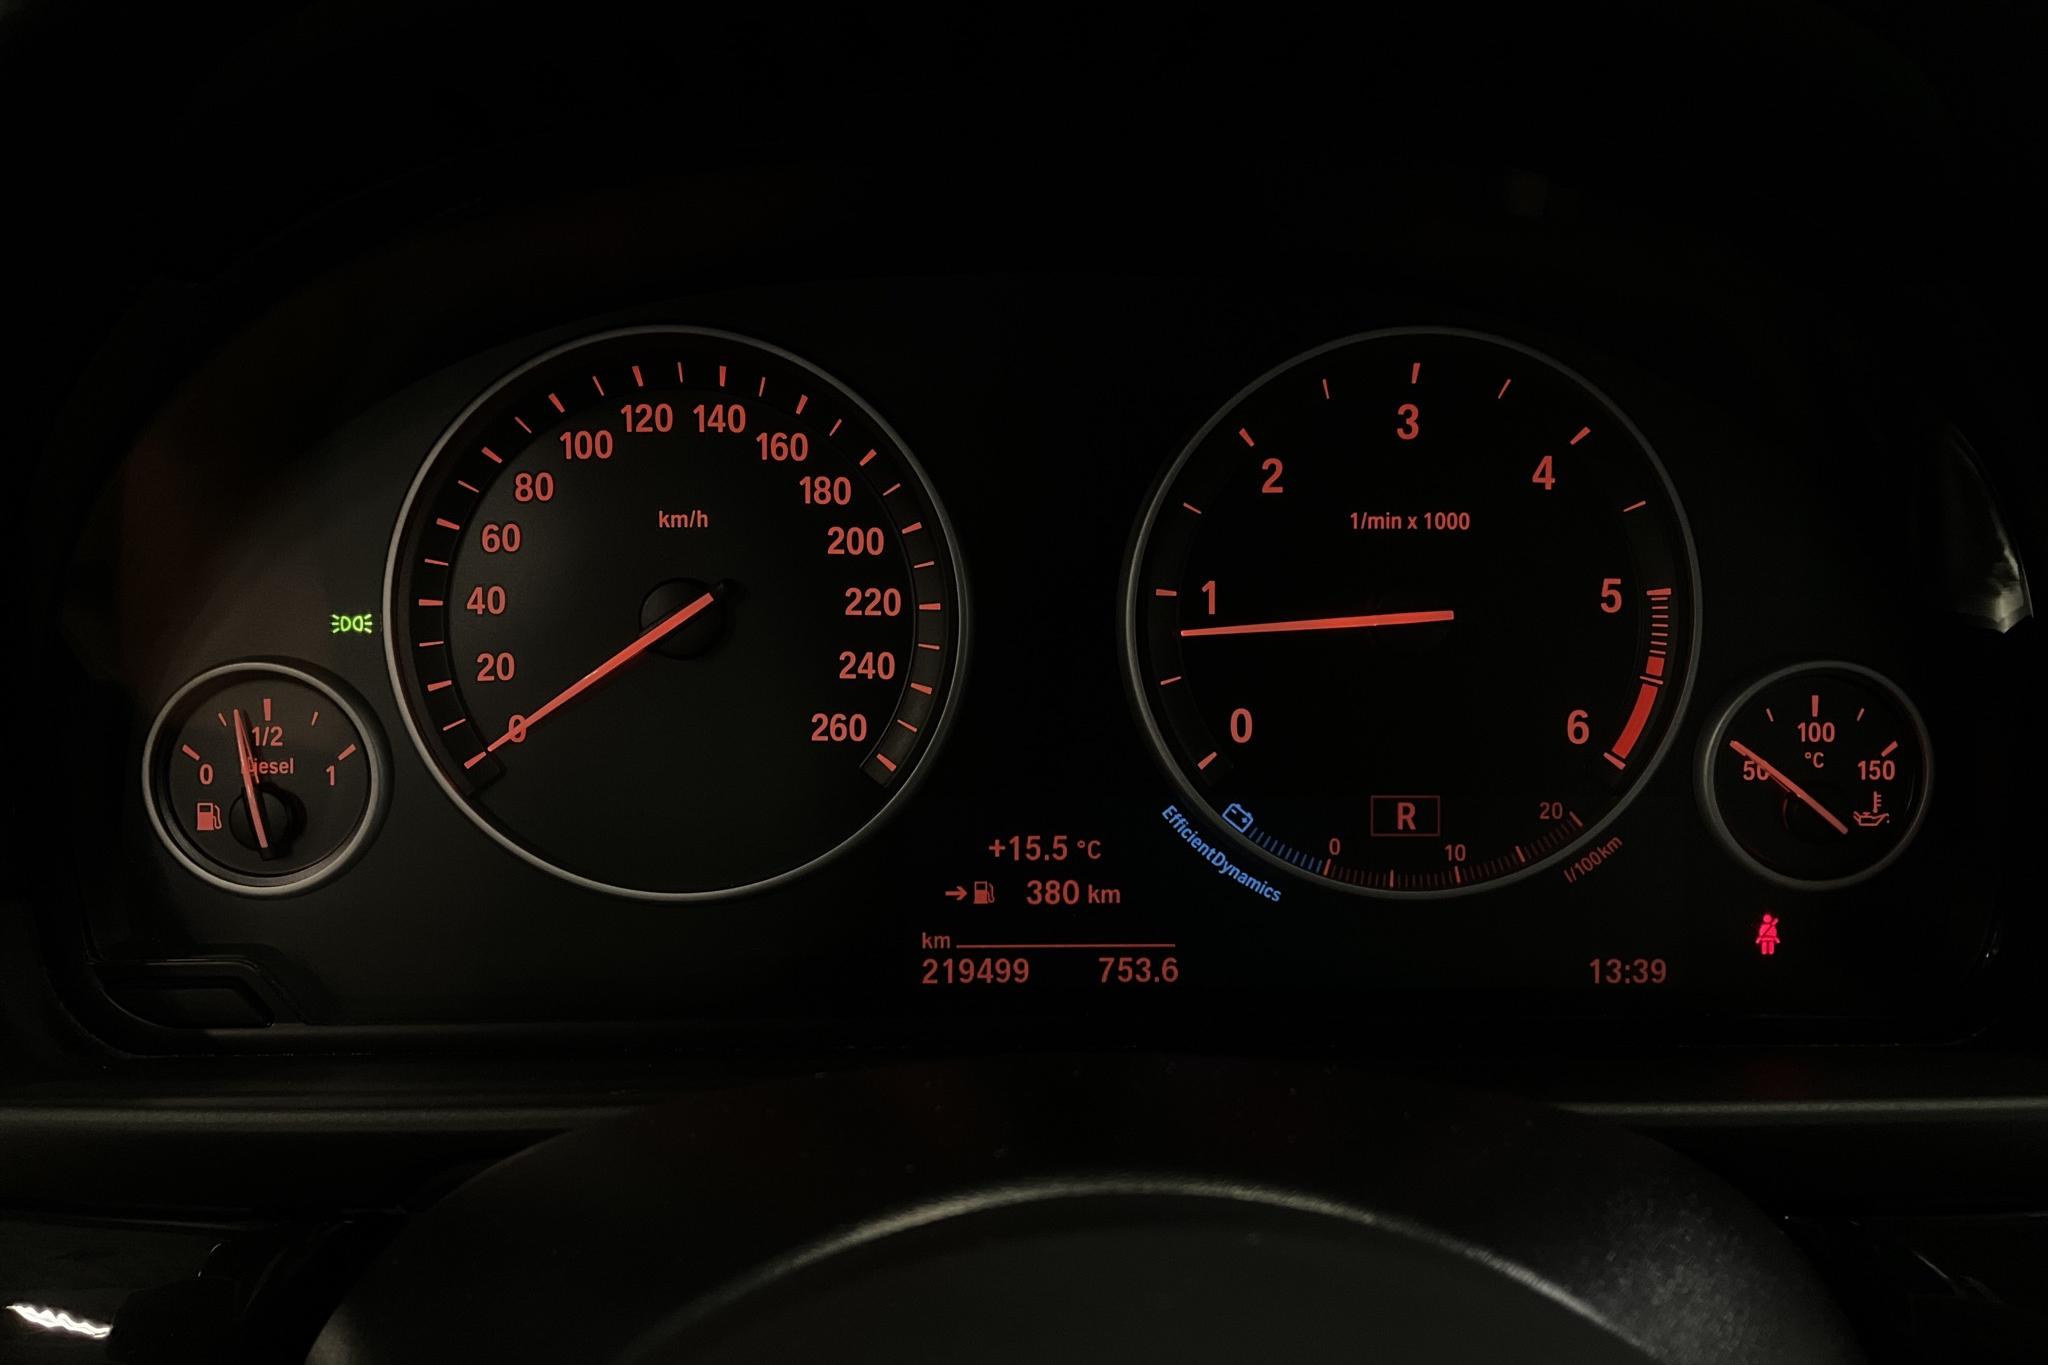 BMW 520d xDrive Touring, F11 (190hk) - 219 490 km - Automatic - brown - 2017